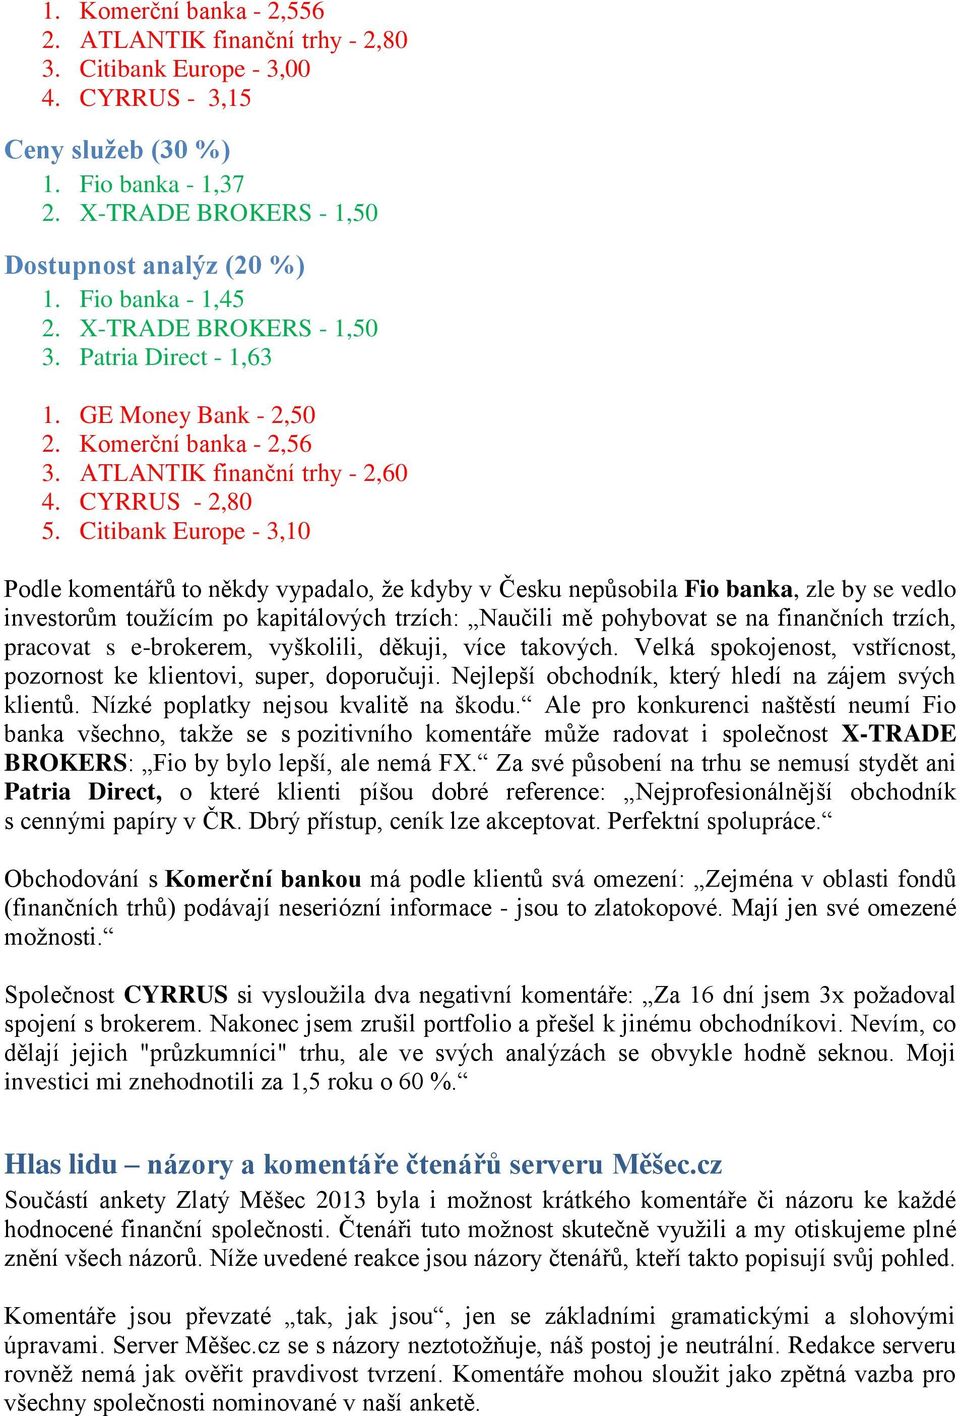 Citibank Europe - 3,10 Podle komentářů to někdy vypadalo, ţe kdyby v Česku nepůsobila Fio banka, zle by se vedlo investorům touţícím po kapitálových trzích: Naučili mě pohybovat se na finančních